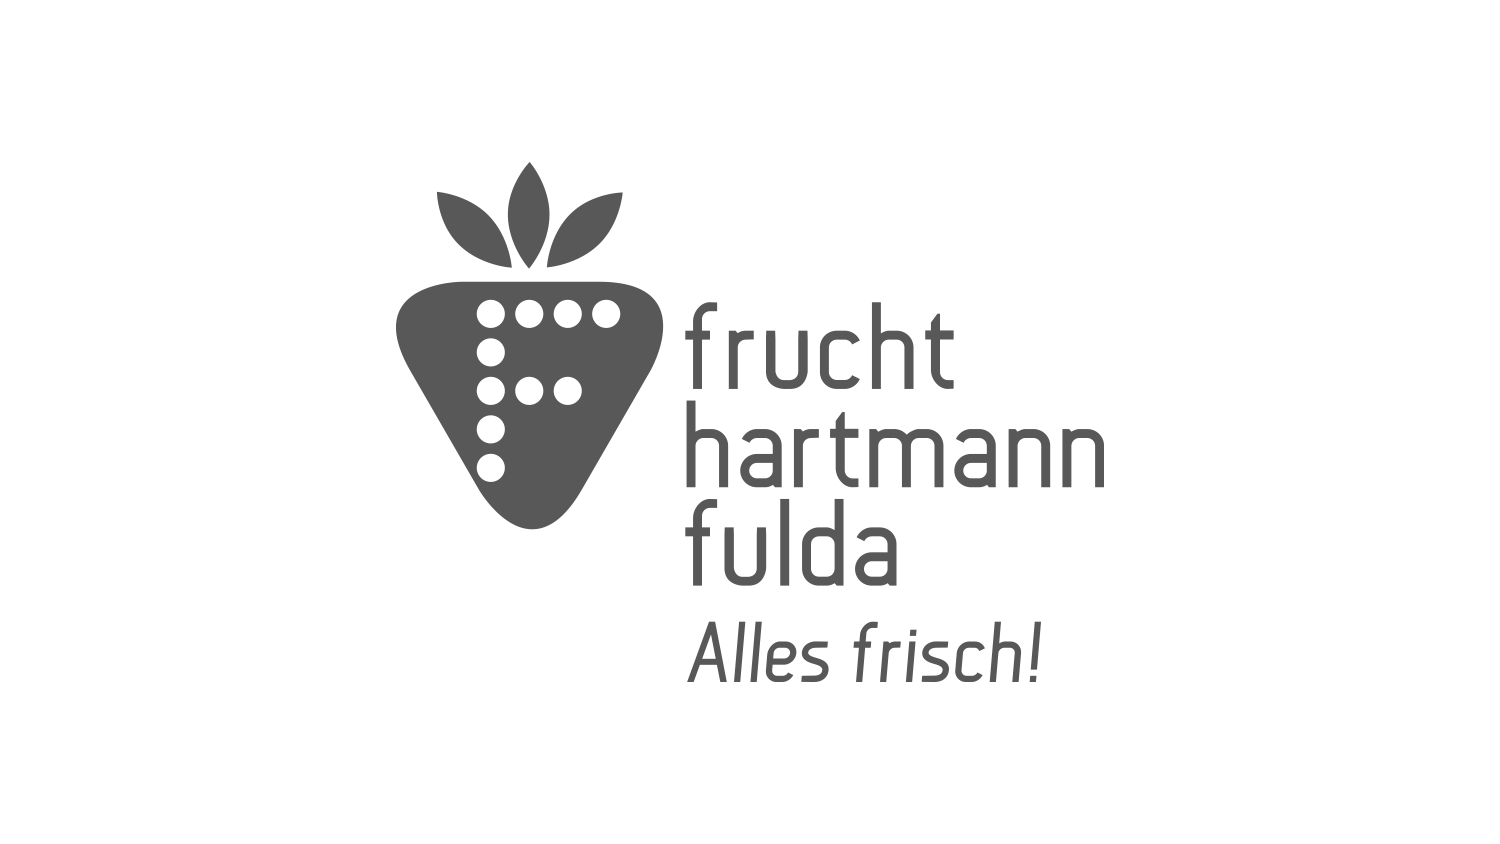 Frucht Hartmann Fulda Logo in grauer Schrift. Links ein stilisiertes Erdbeersymbol mit einem "F" aus Punkten, rechts der Text "frucht hartmann fulda" und darunter "Alles frisch!